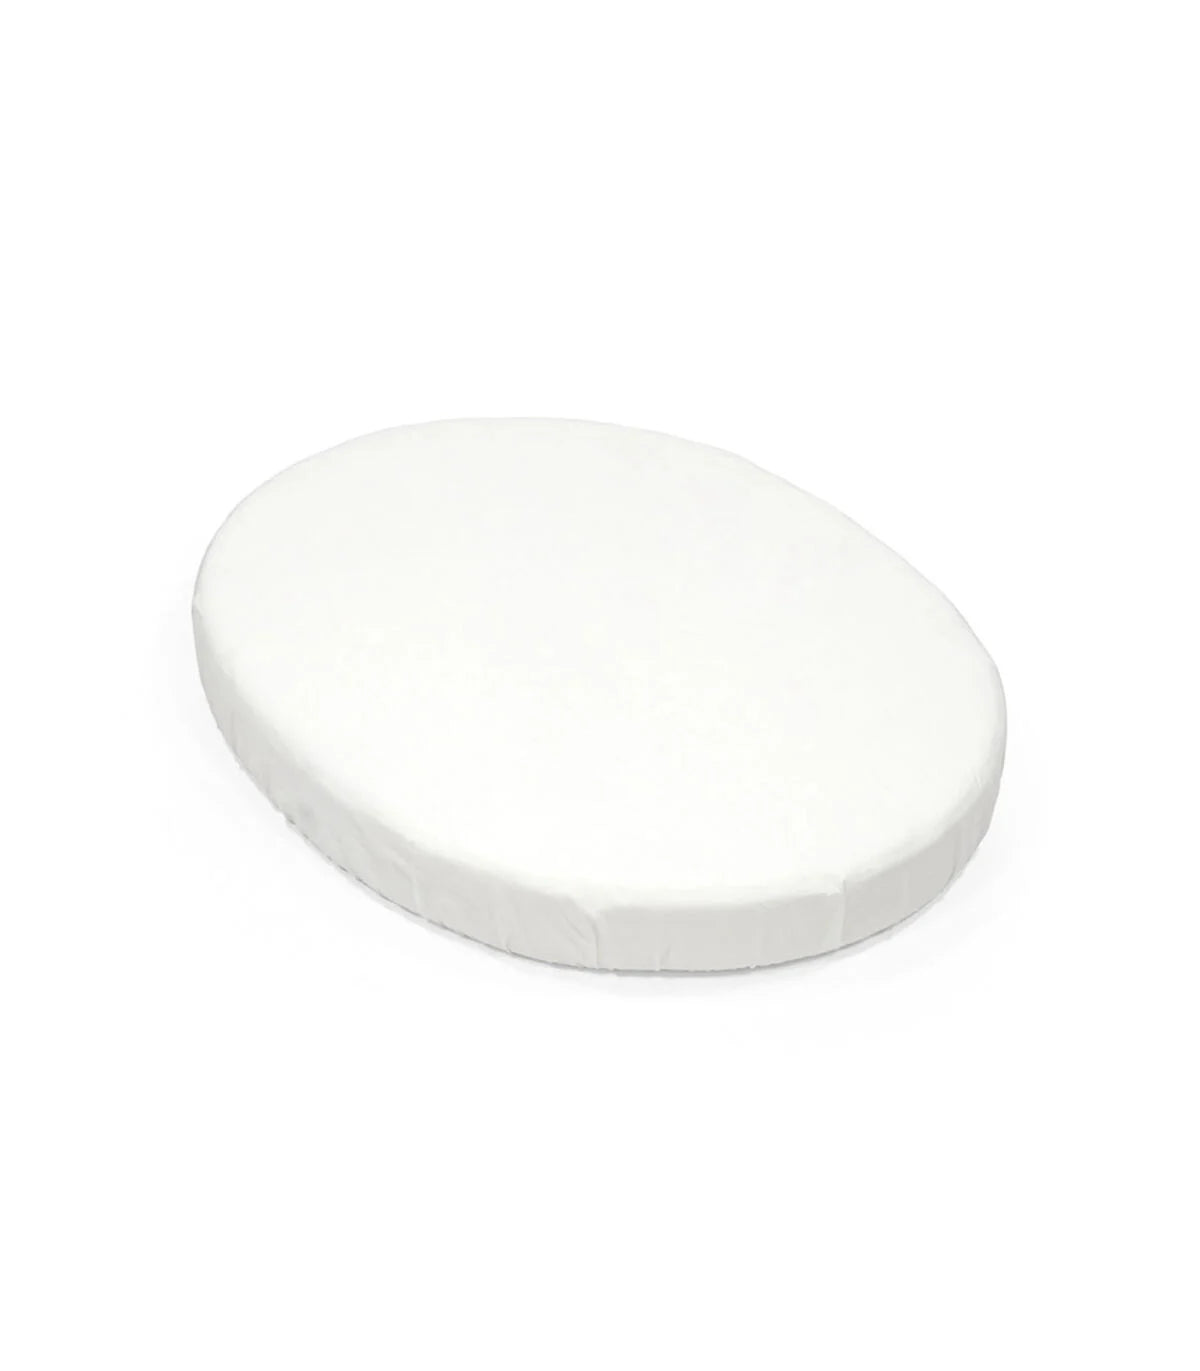 STOKKE® Sleepi™ mini sábana bajera ajustable